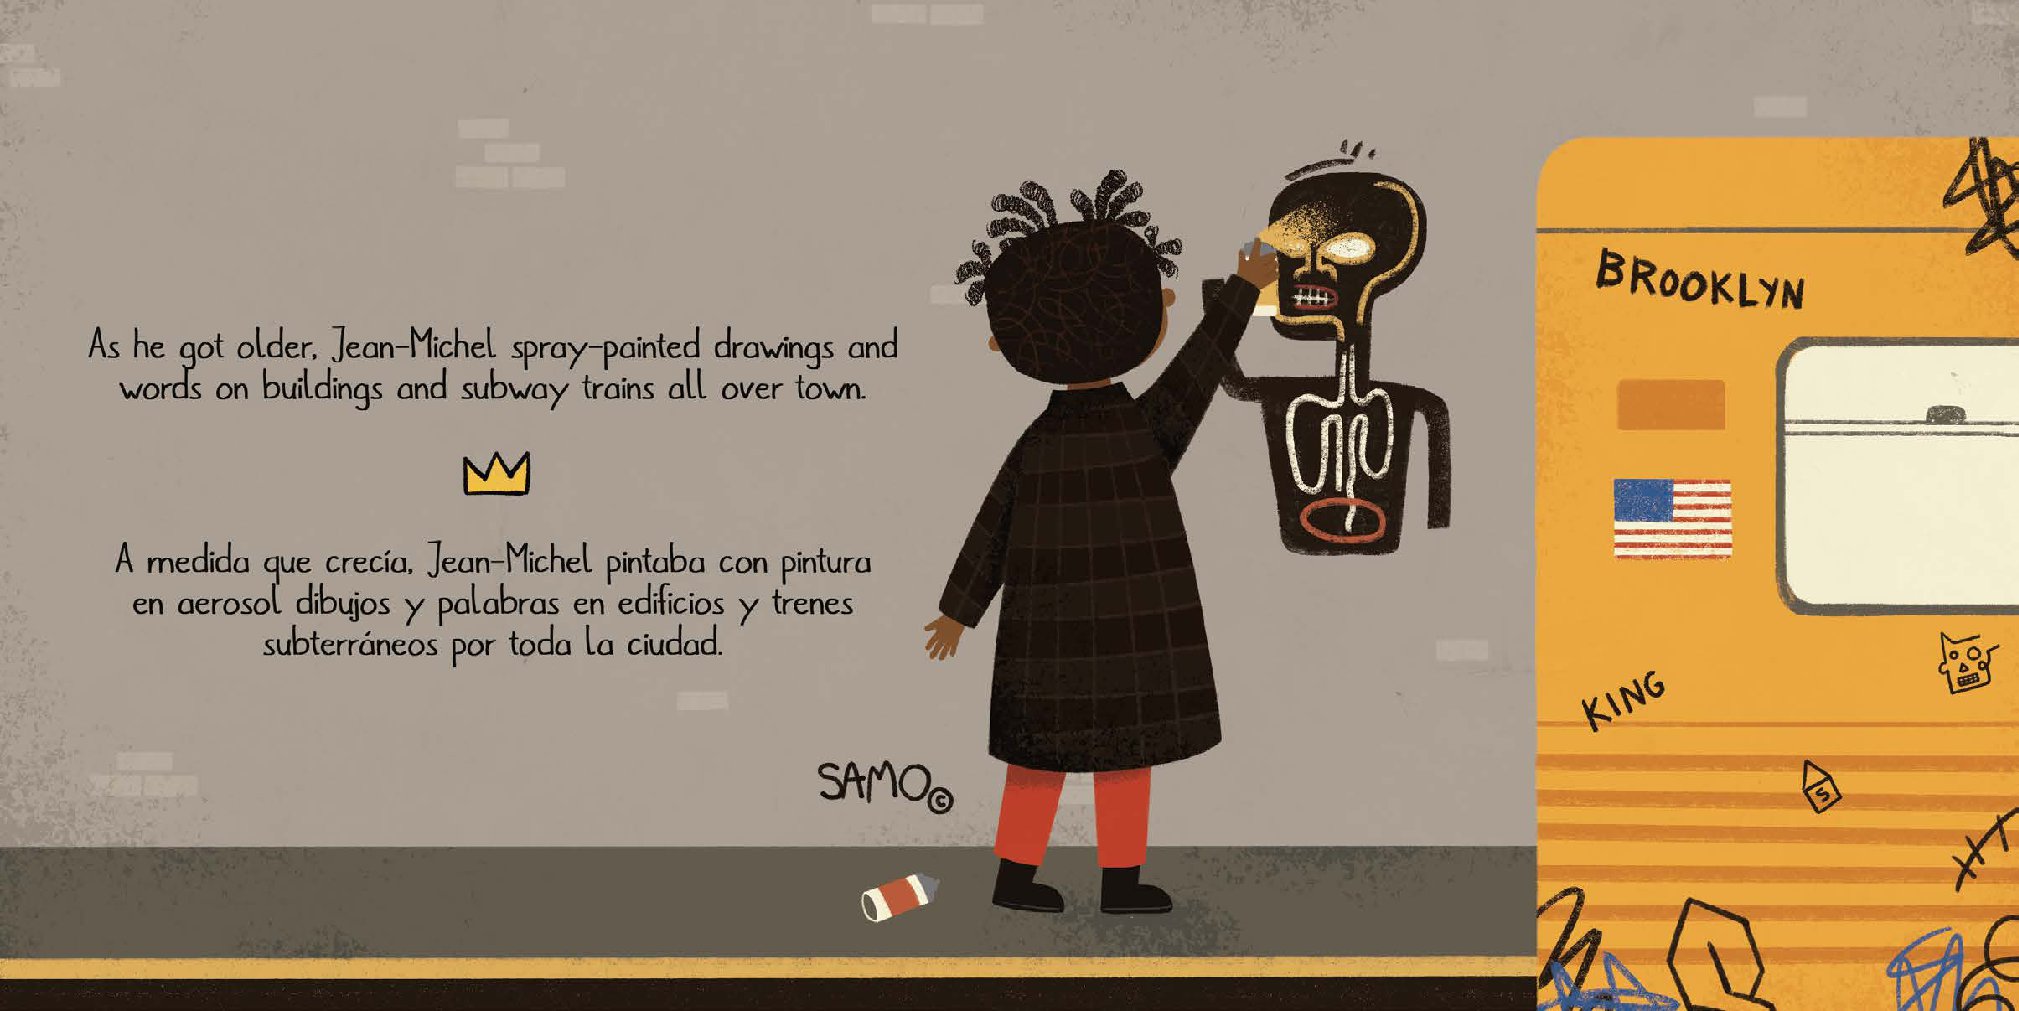 The Life of / La vida de Basquiat